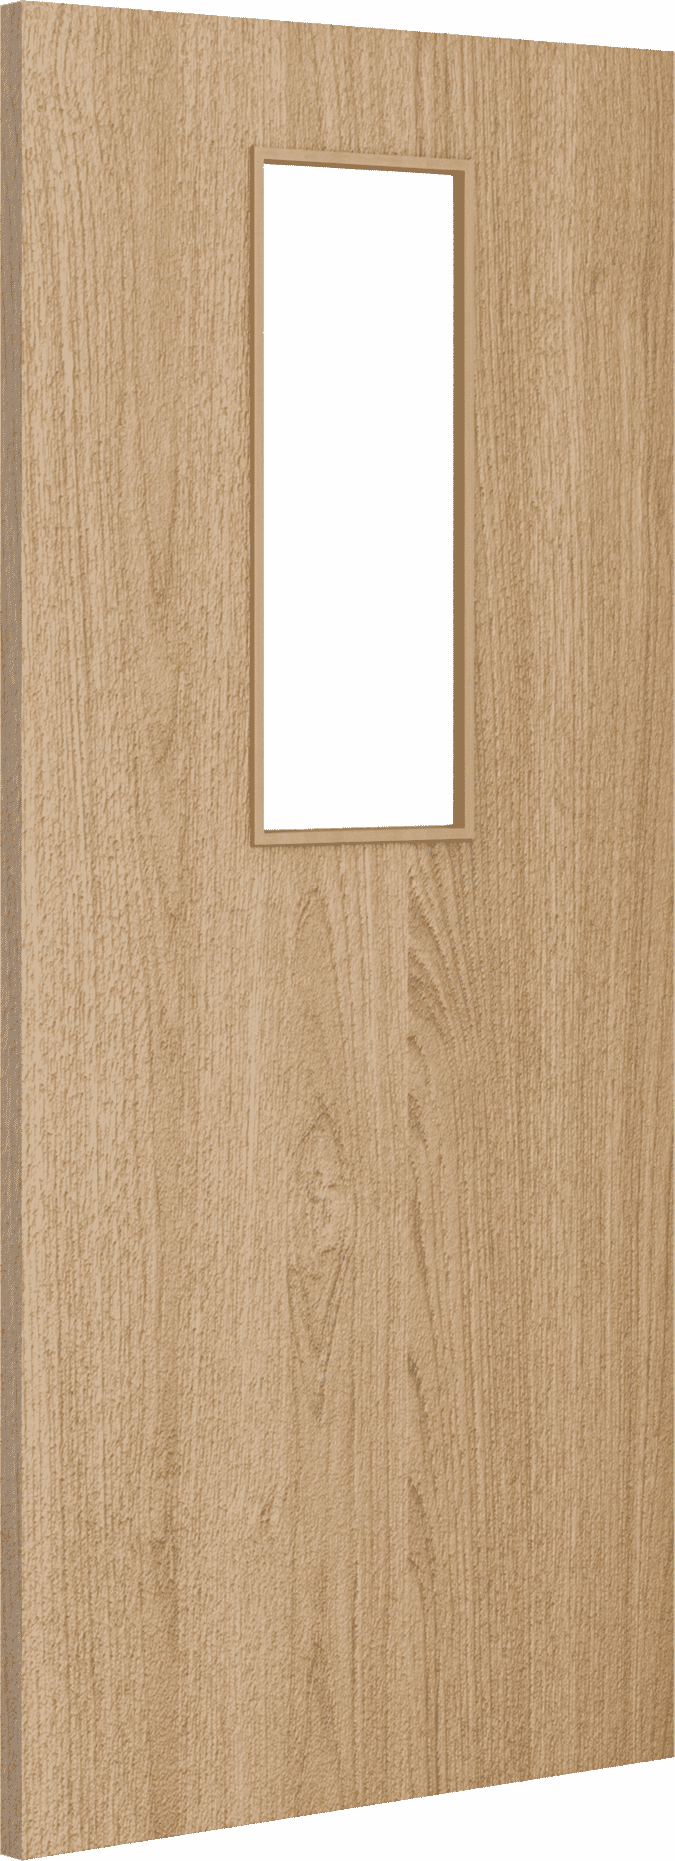 2040mm x 826mm x 54mm Architectural Oak 14 Clear Glazed - Prefinished FD60 Fire Door Blank